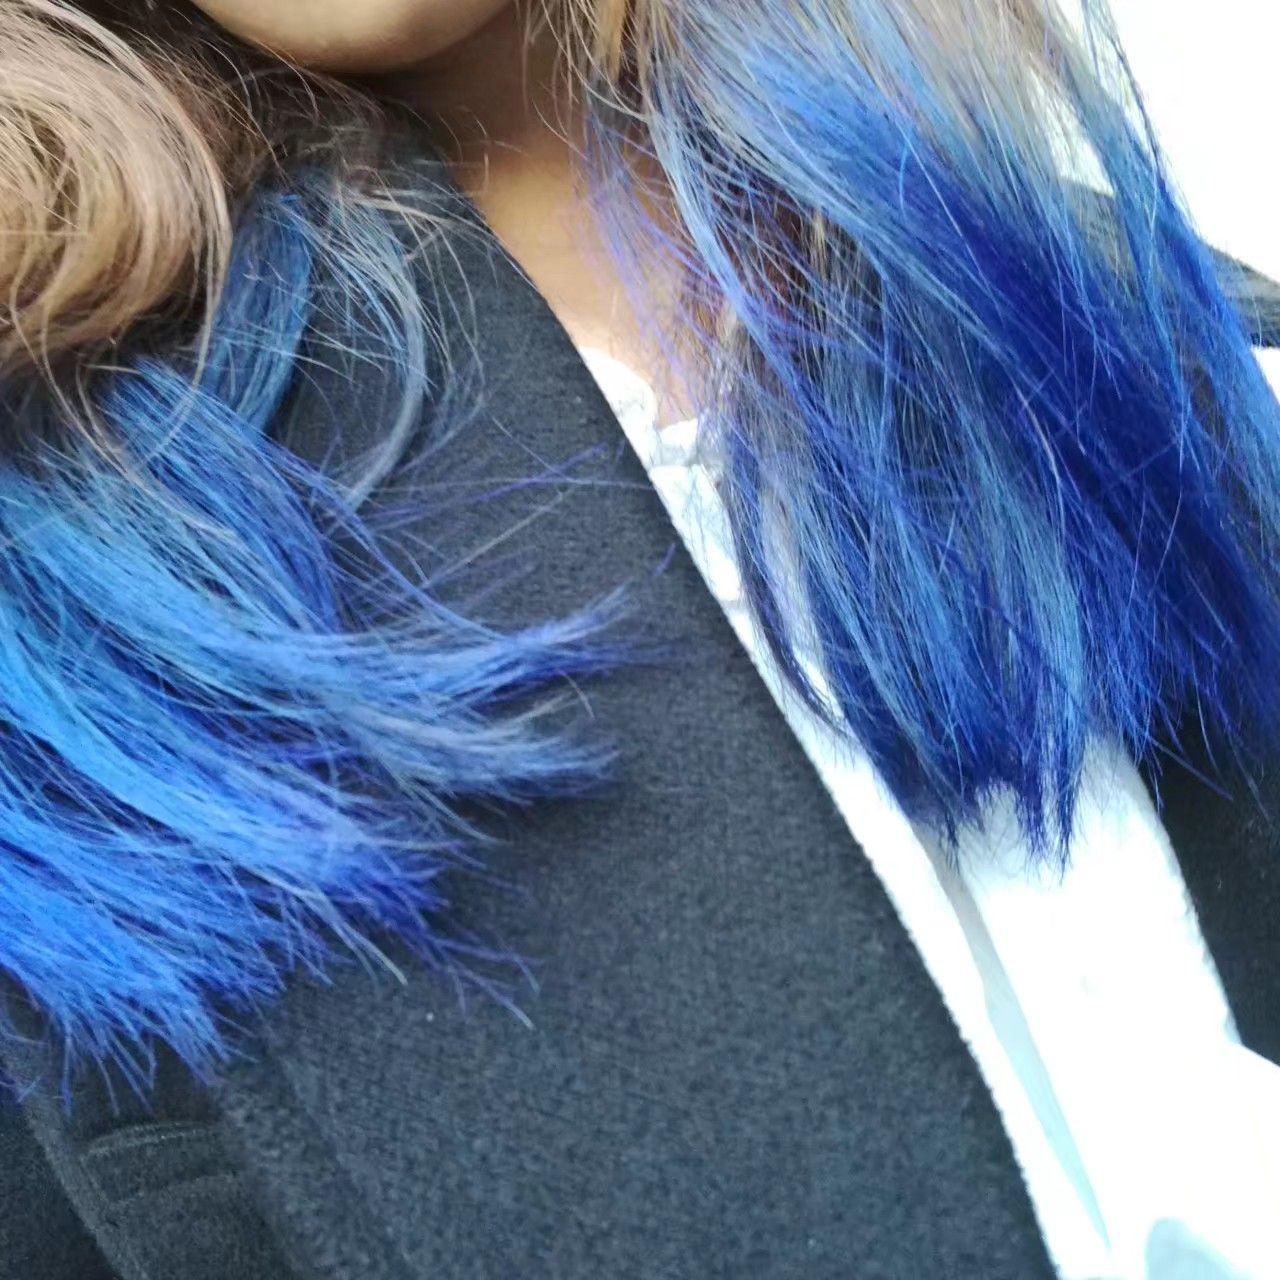 染蓝绿色的头发是种怎样的体验